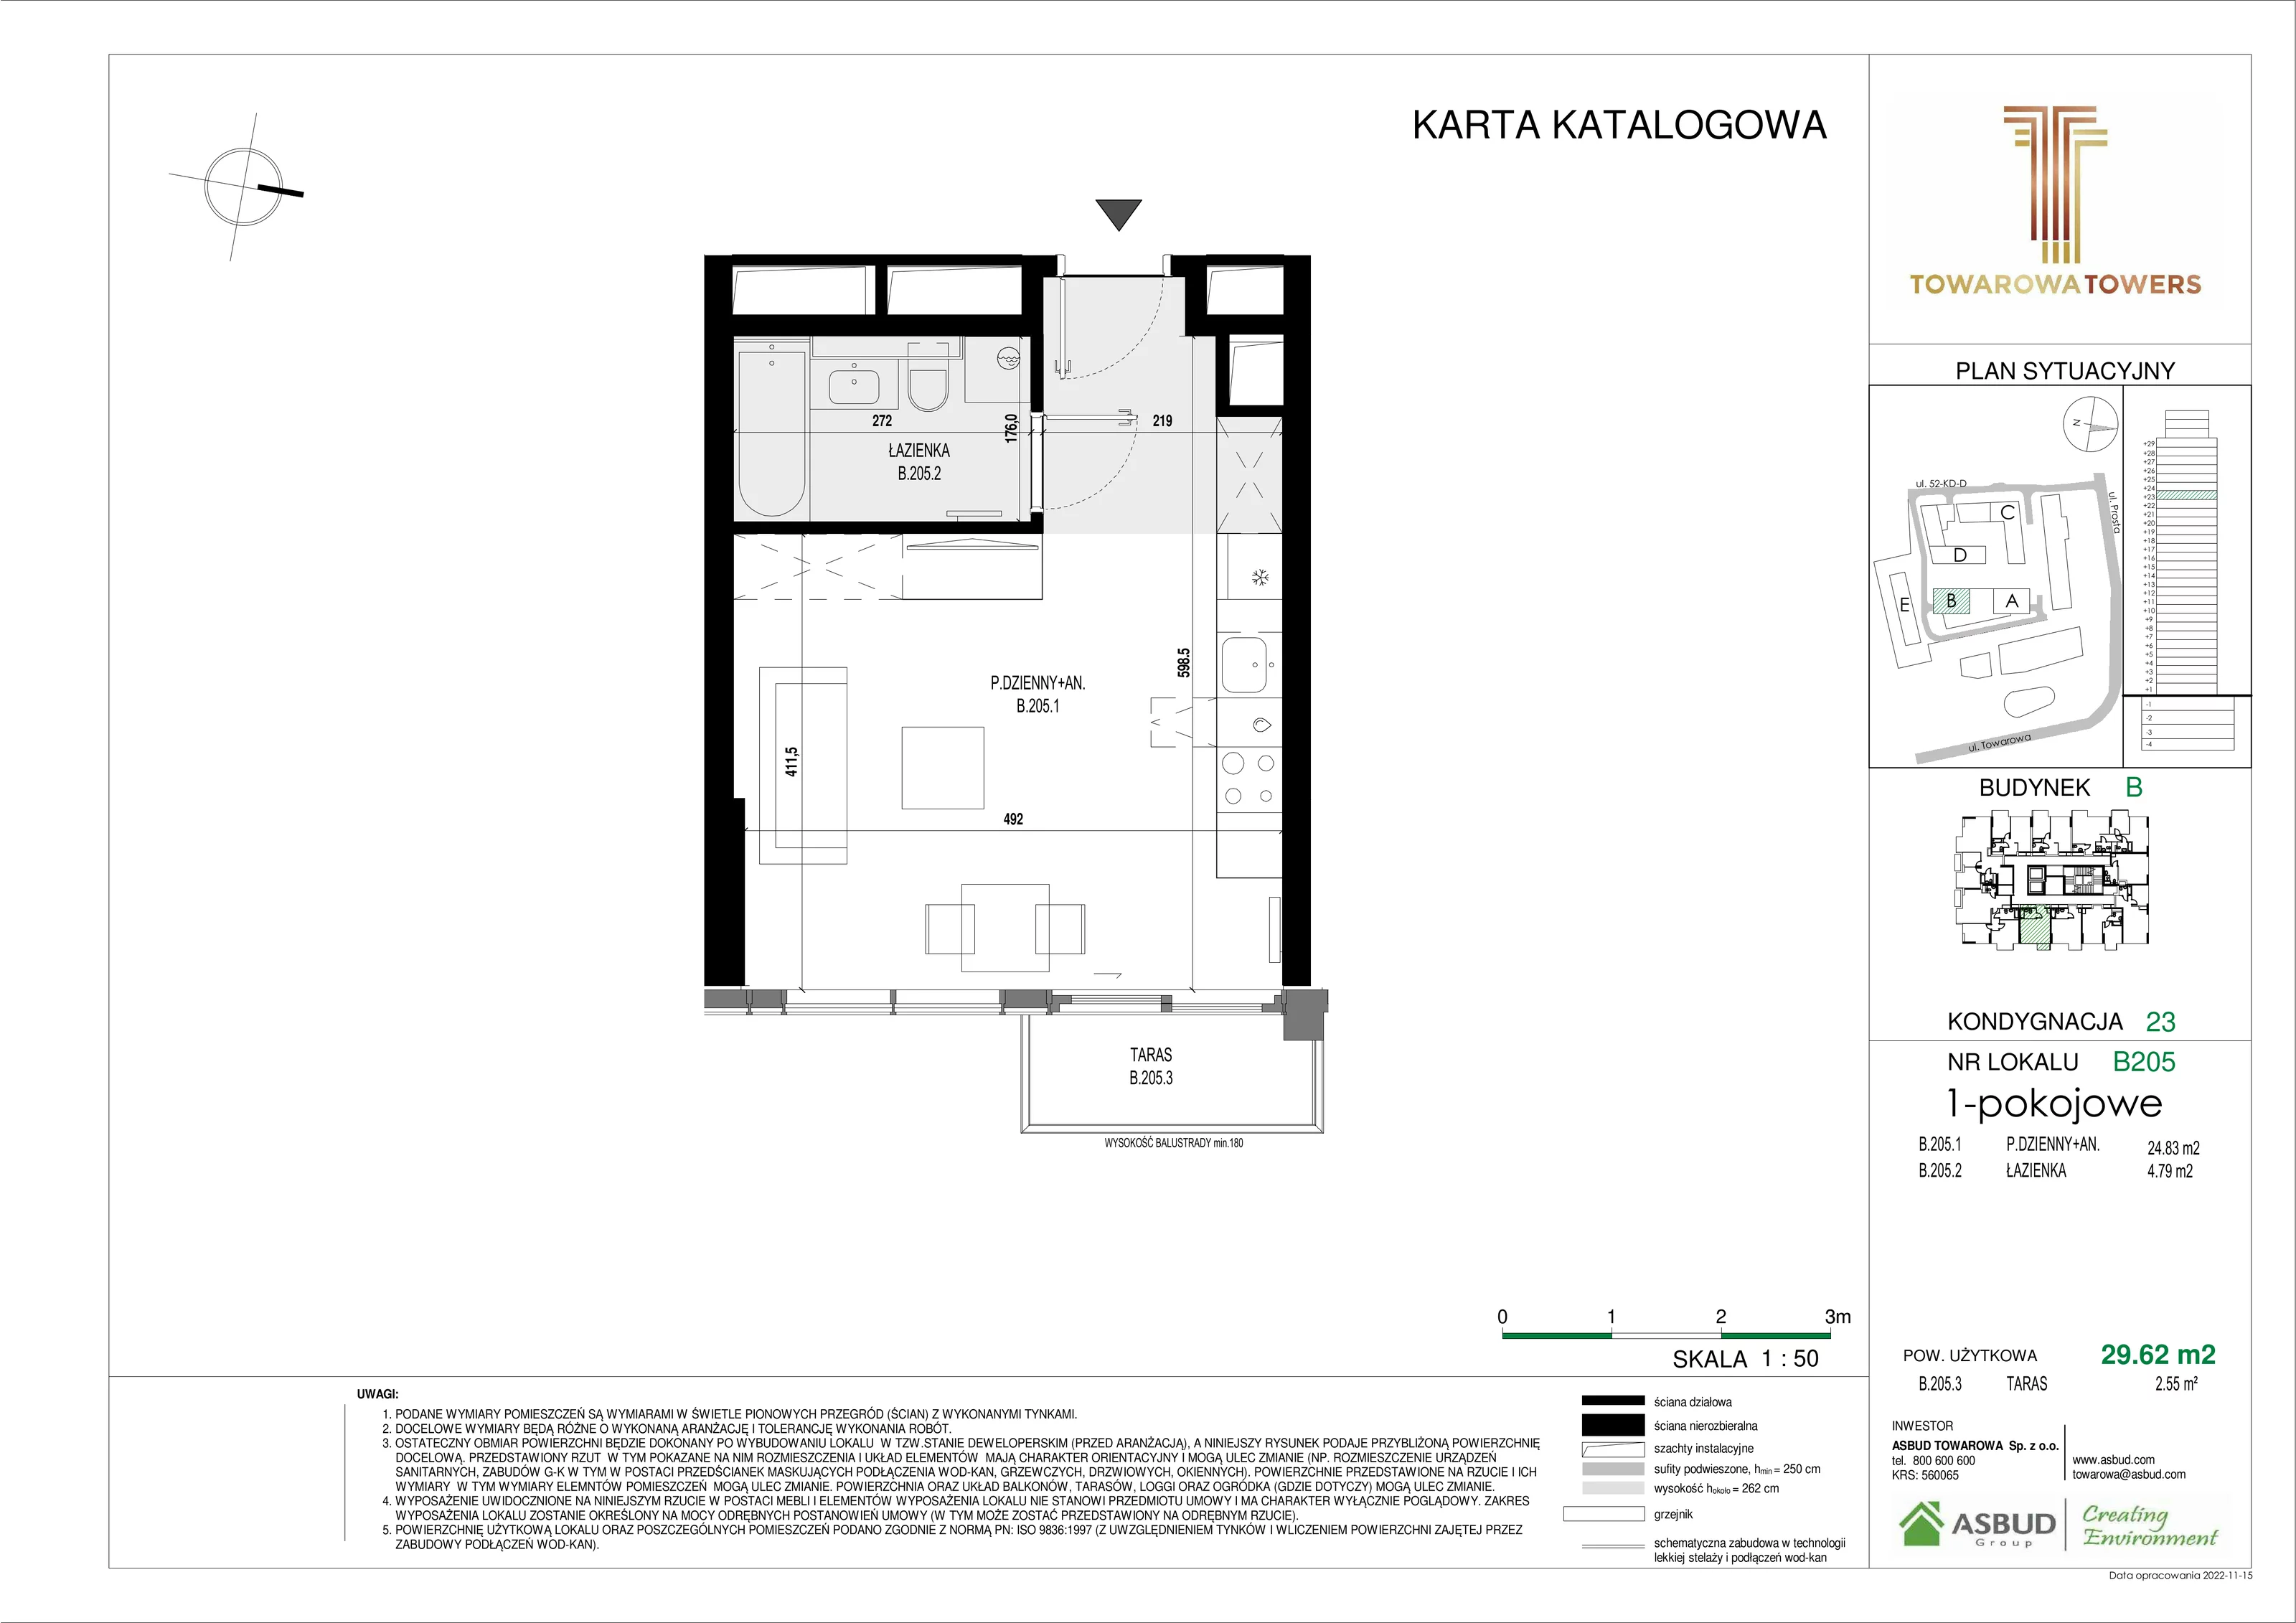 Mieszkanie 29,62 m², piętro 23, oferta nr B.205, Towarowa Towers, Warszawa, Wola, Czyste, ul. Towarowa